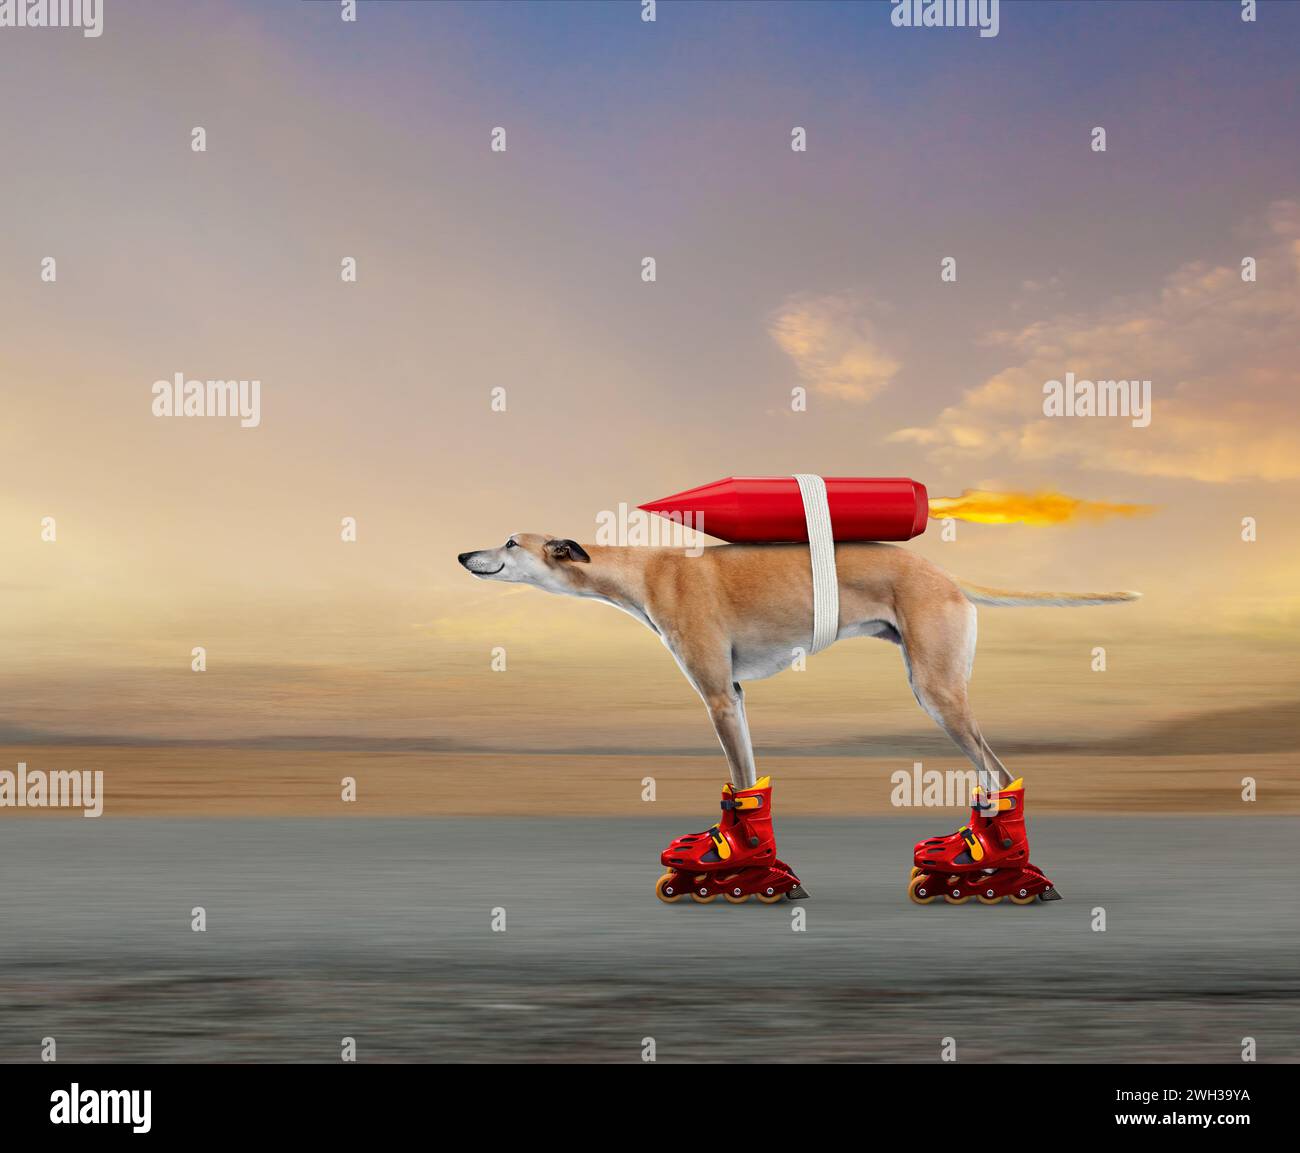 La vitesse, la technologie et l'innovation sont dans cette image d'un drôle de chien greyhound qui accélère sur une route sur des rollers et propulsé par une fusée. Banque D'Images